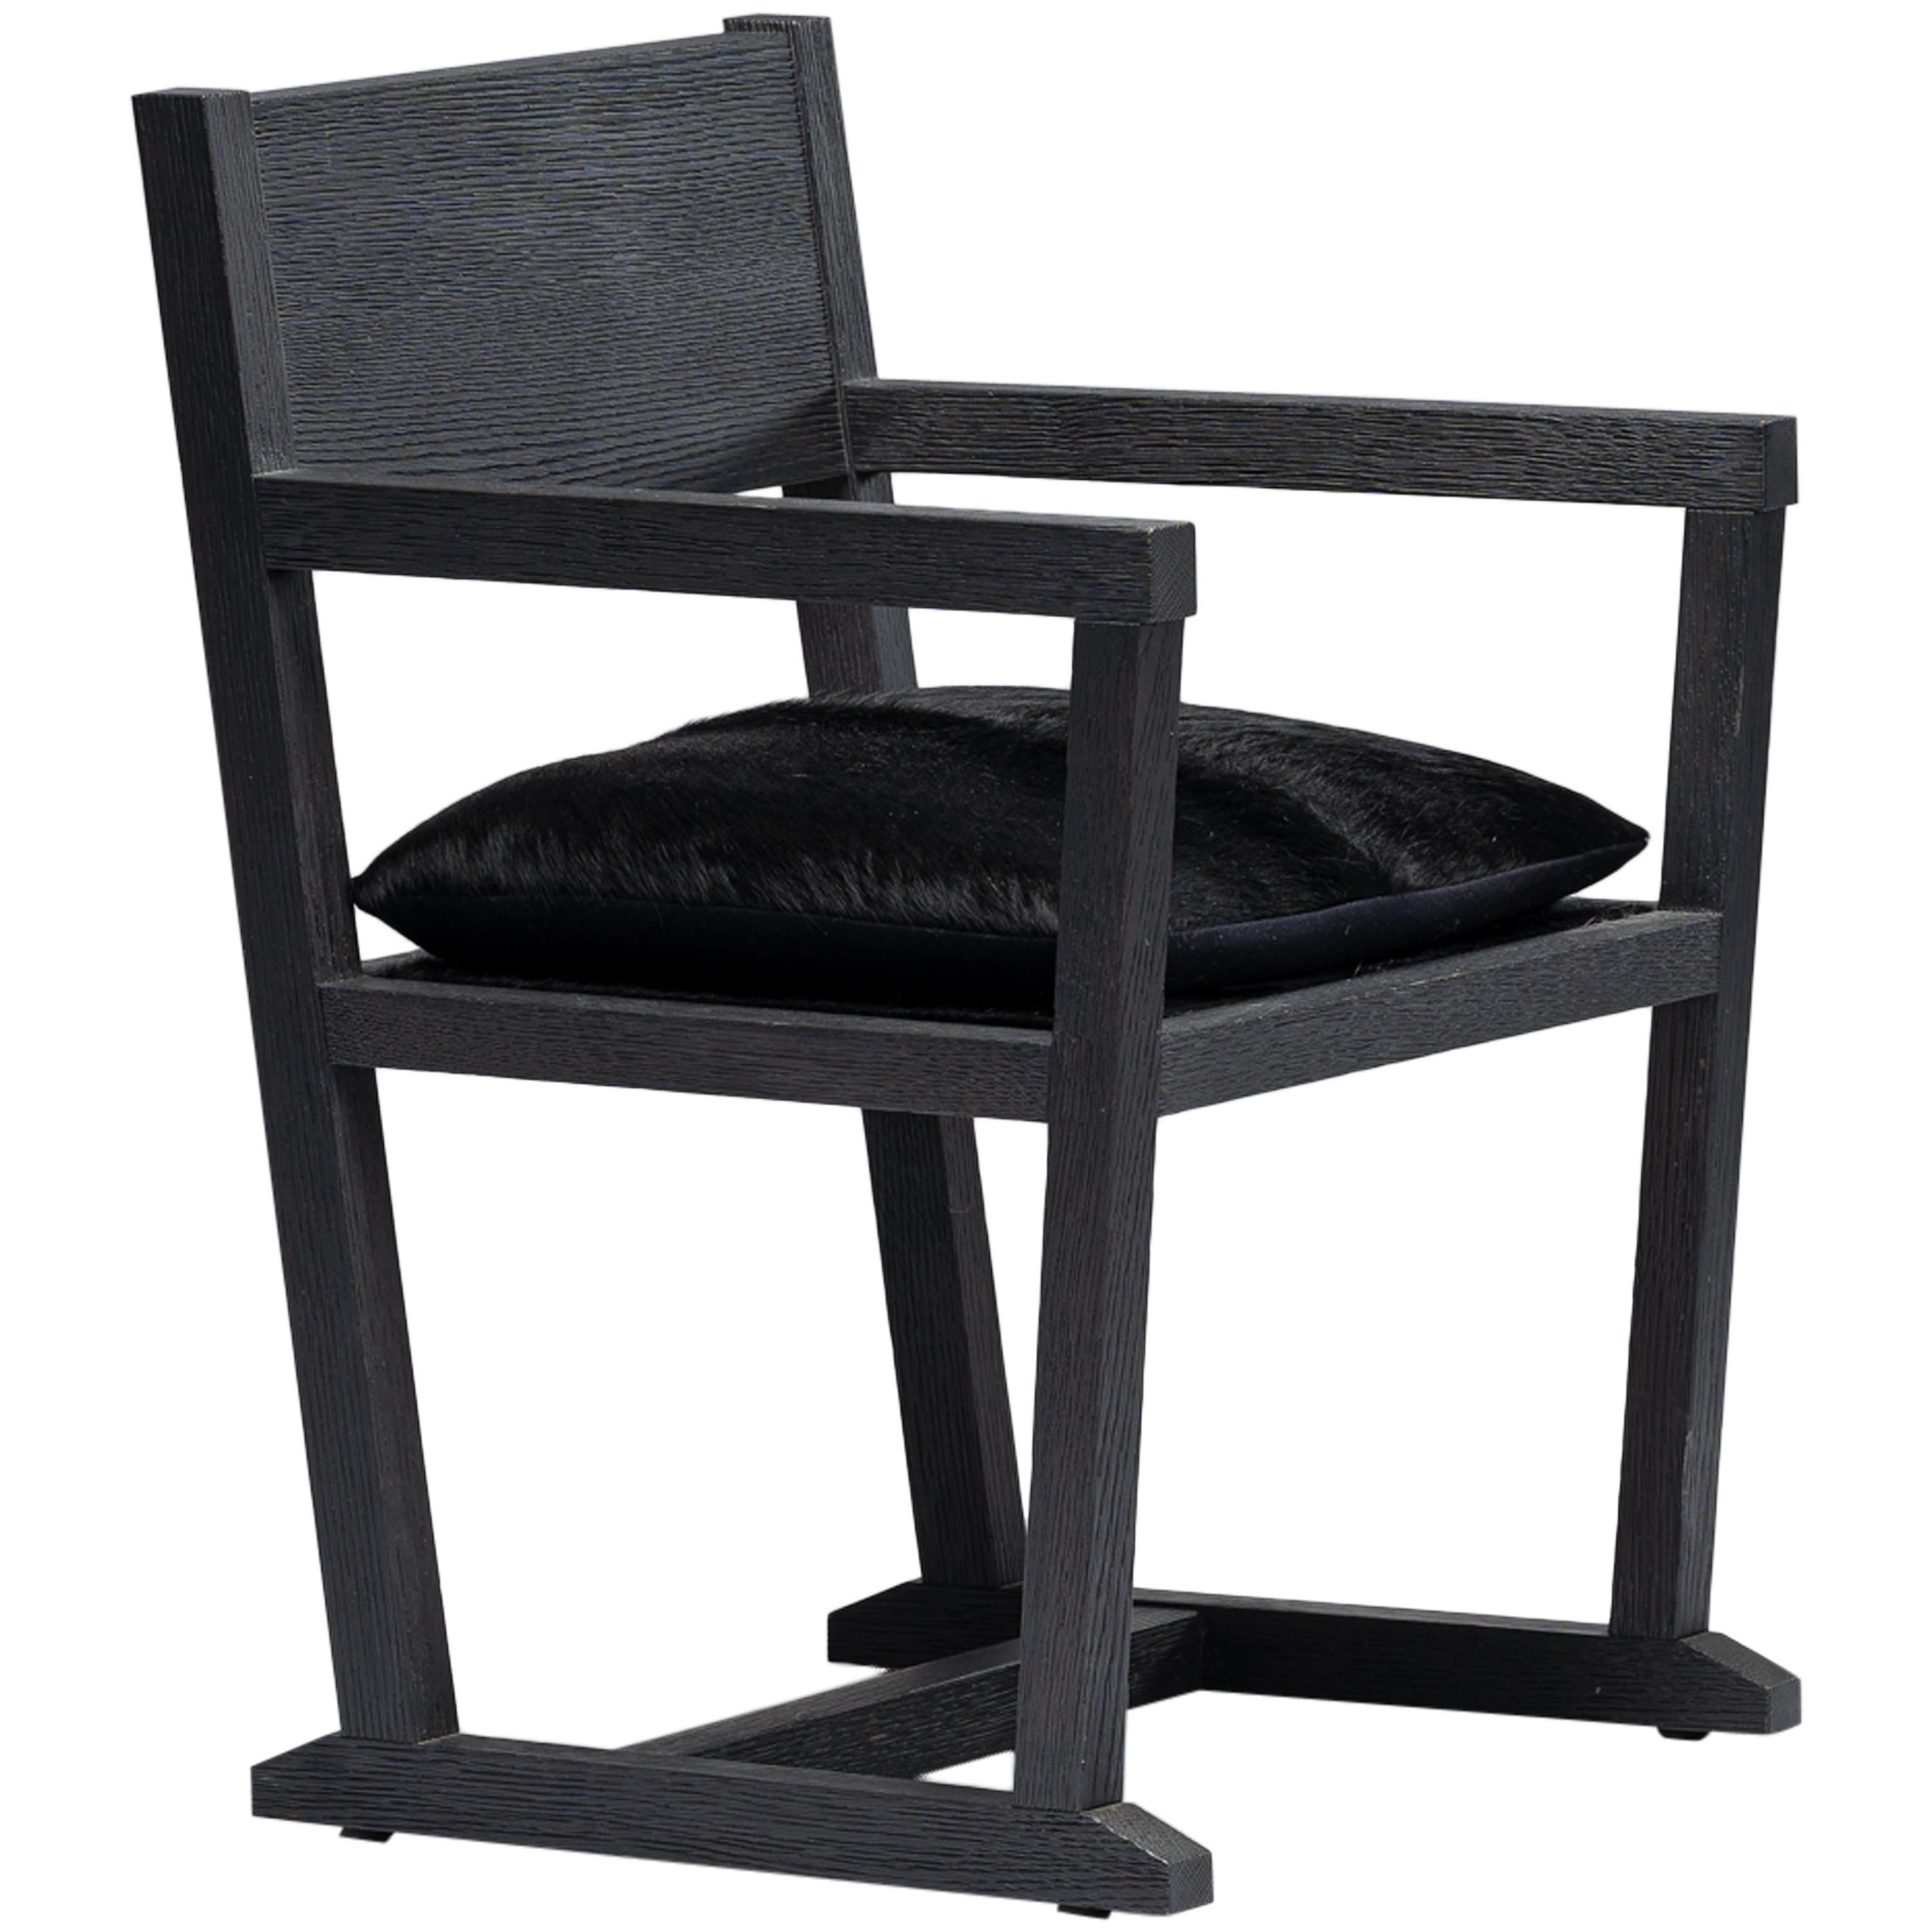 Louis Black Desk Chair/Armchair Chêne sablé/Assise en cuir de vache noir, Mandy Graham